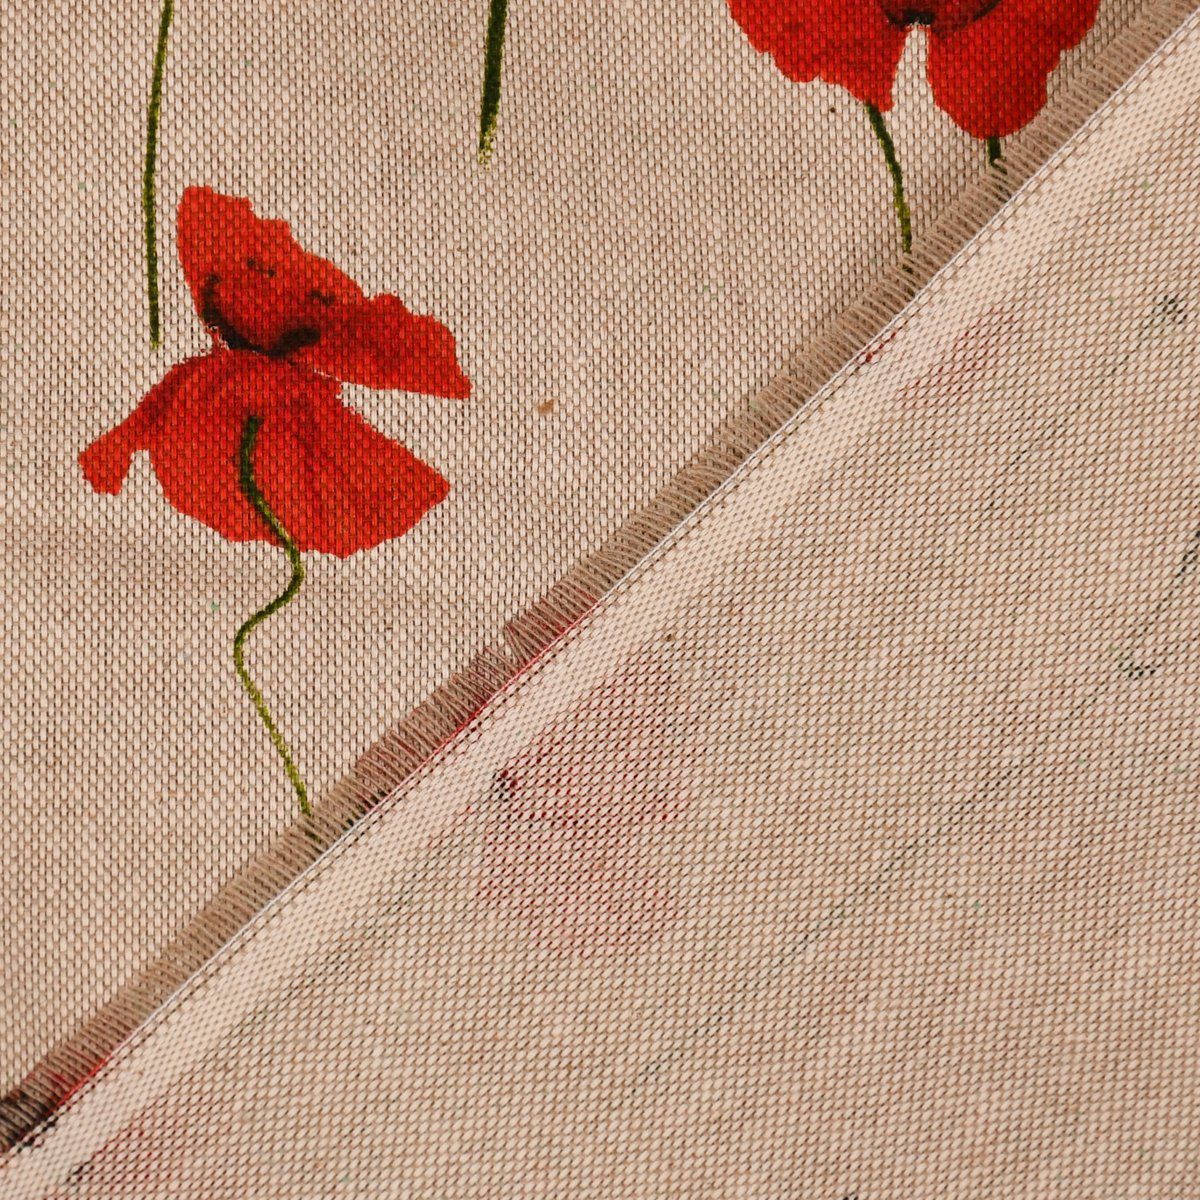 SCHÖNER LEBEN. Tischläufer rot, handmade SCHÖNER Poppy LEBEN. Tischläufer Field natur Mohnblumen